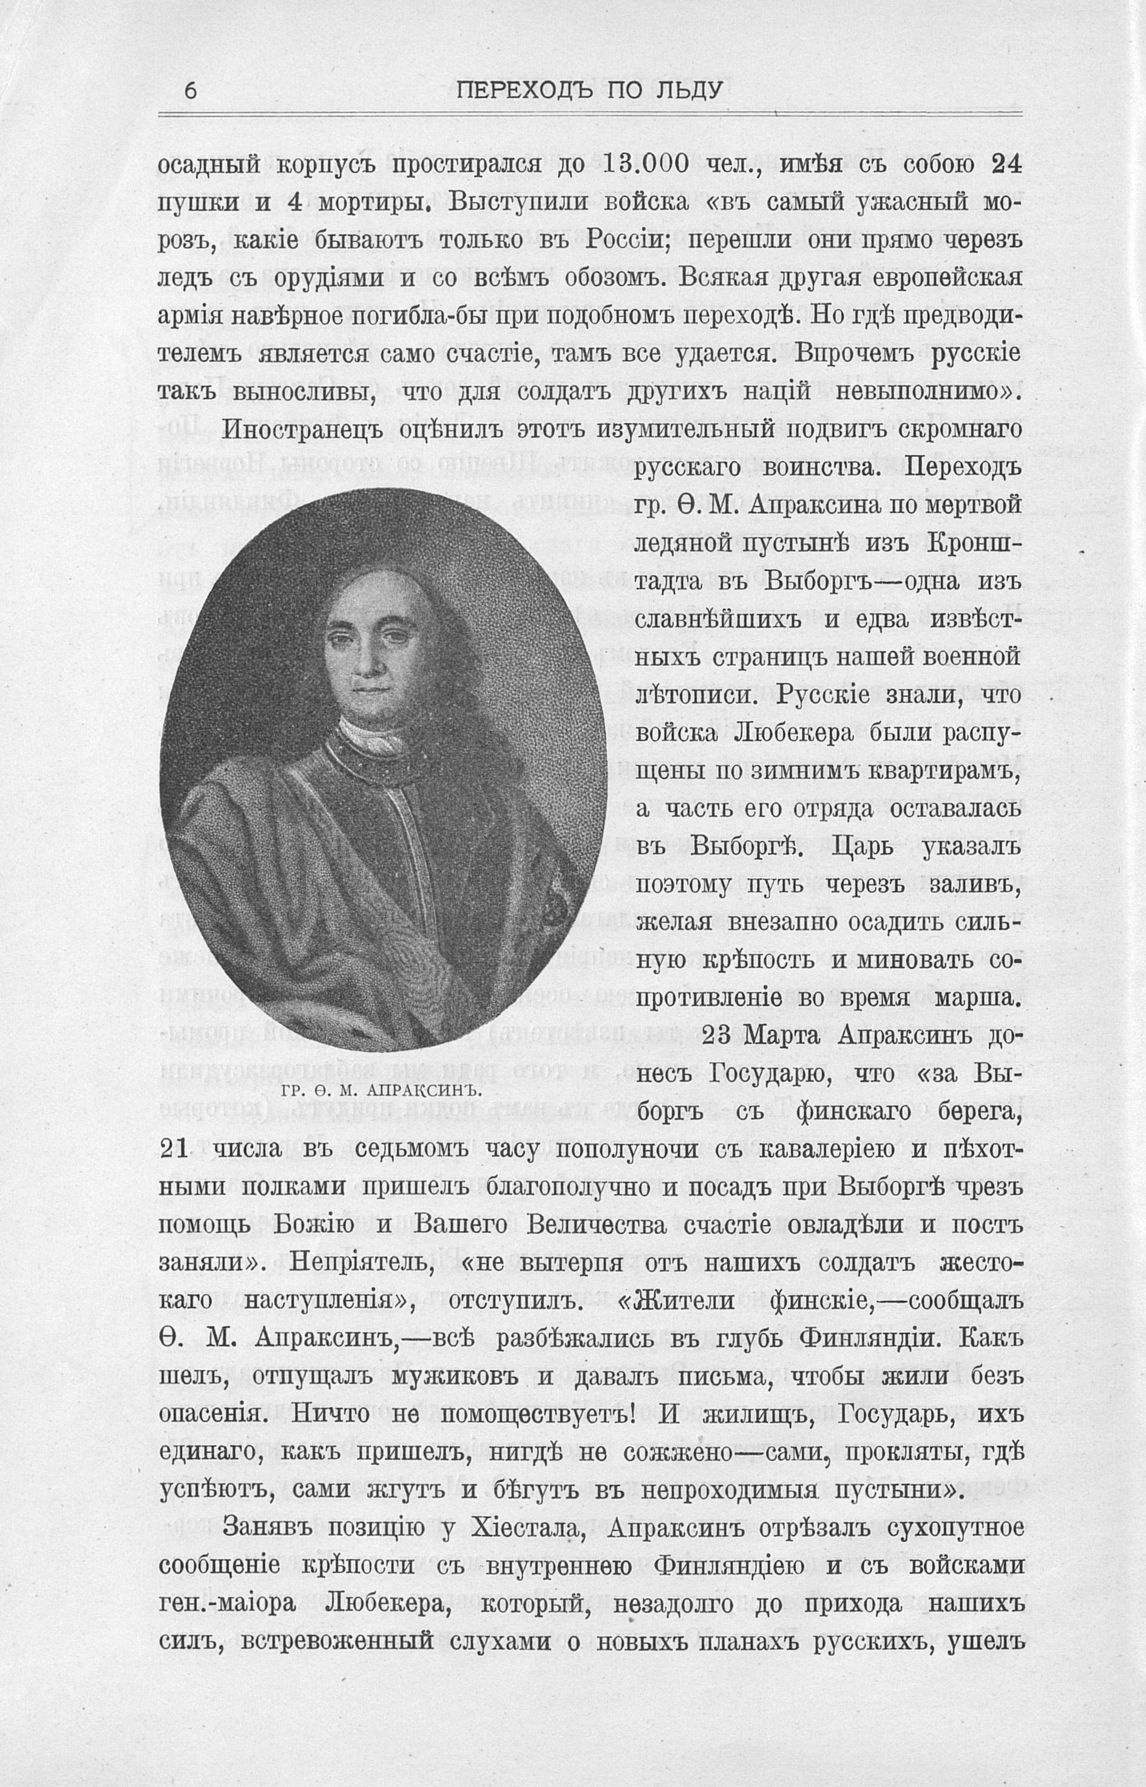 Апраксин Федор Матвеевич (1661-1728)